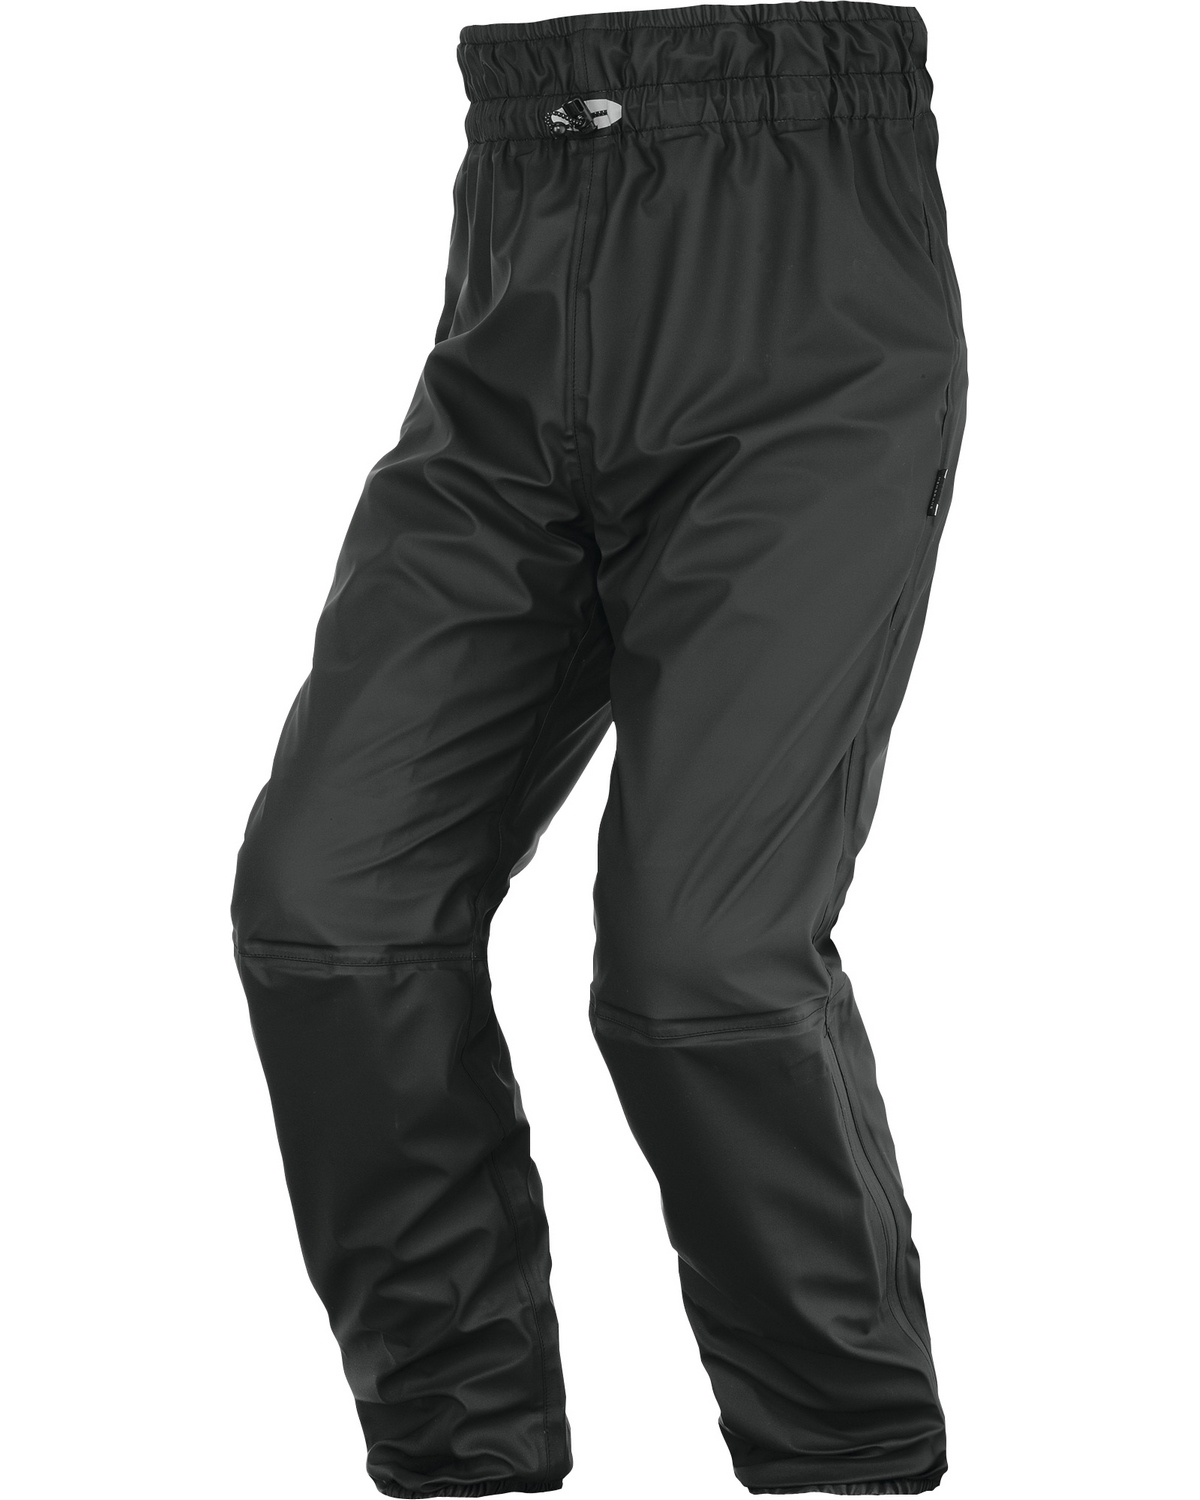 Pantalon de pluie femme Ergonomic Pro DP Scott moto : www.dafy